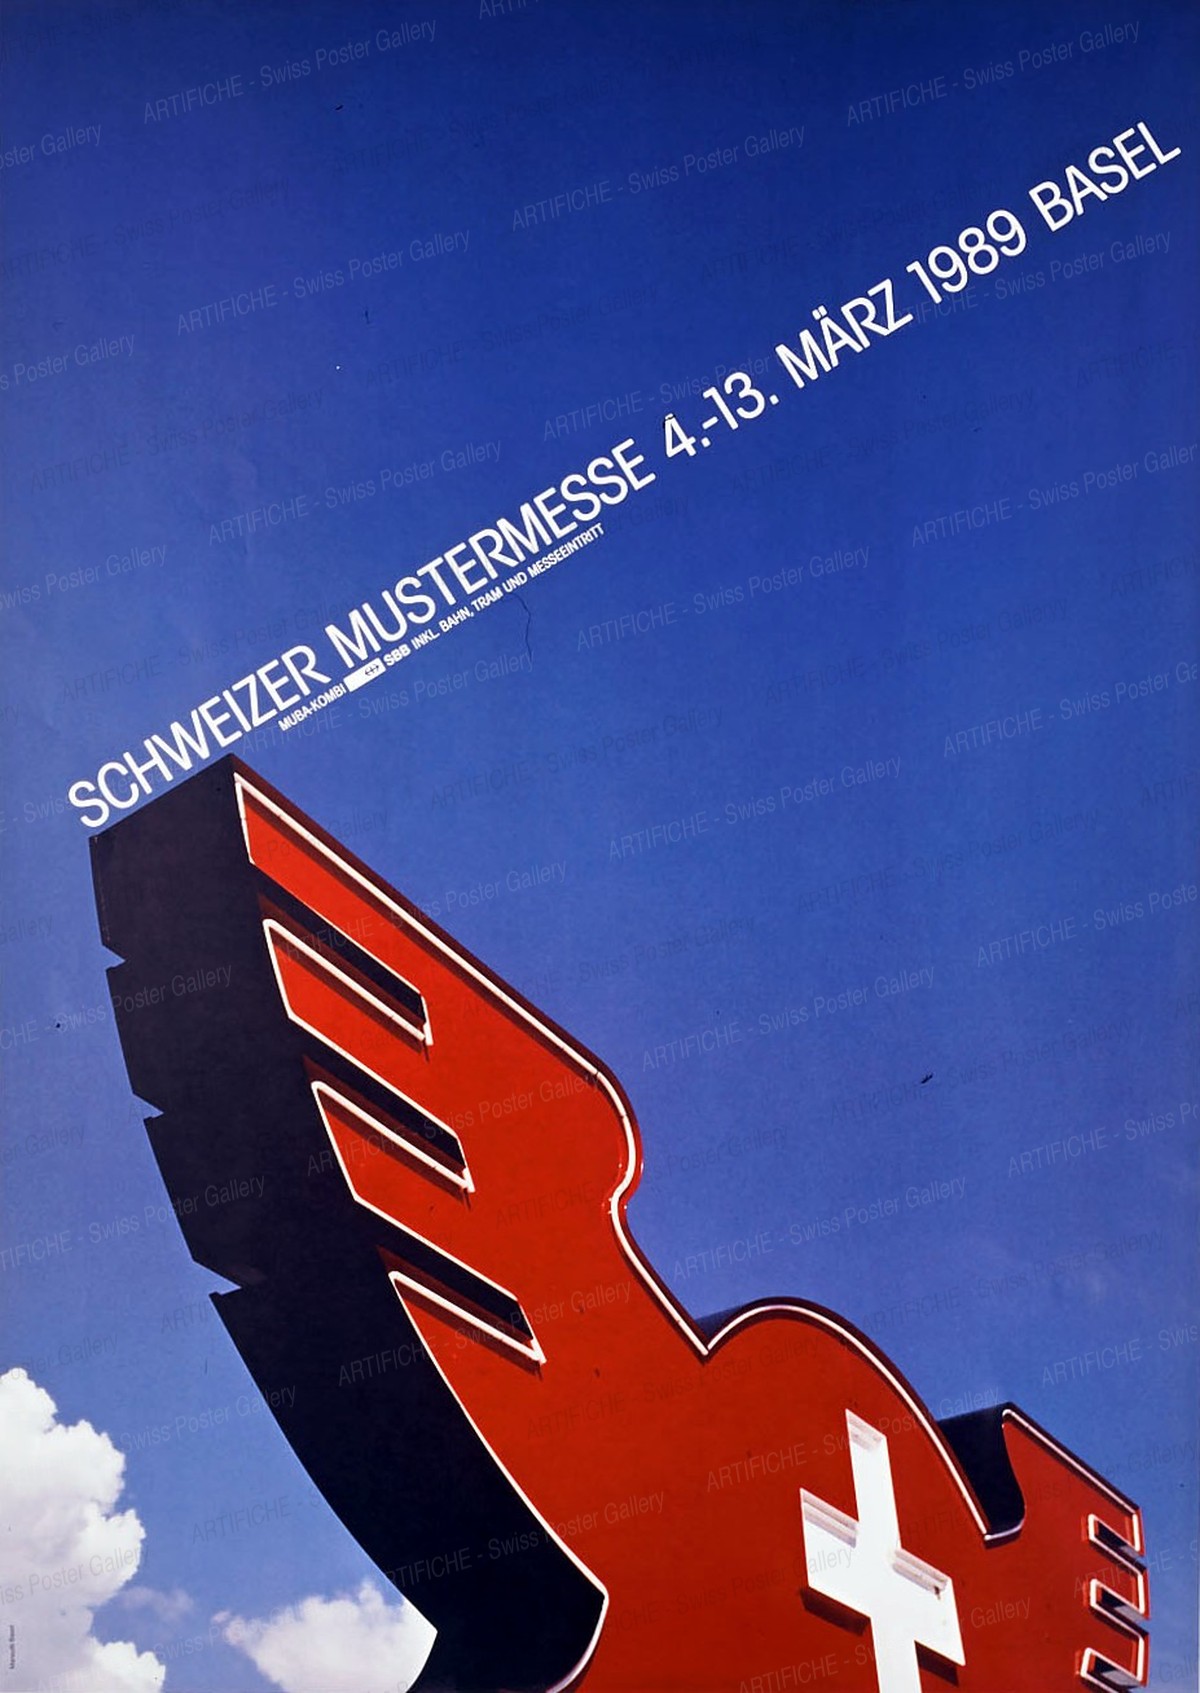 Schweizer Mustermesse Basel 4. – 13. März 1989, Onorio Mansutti